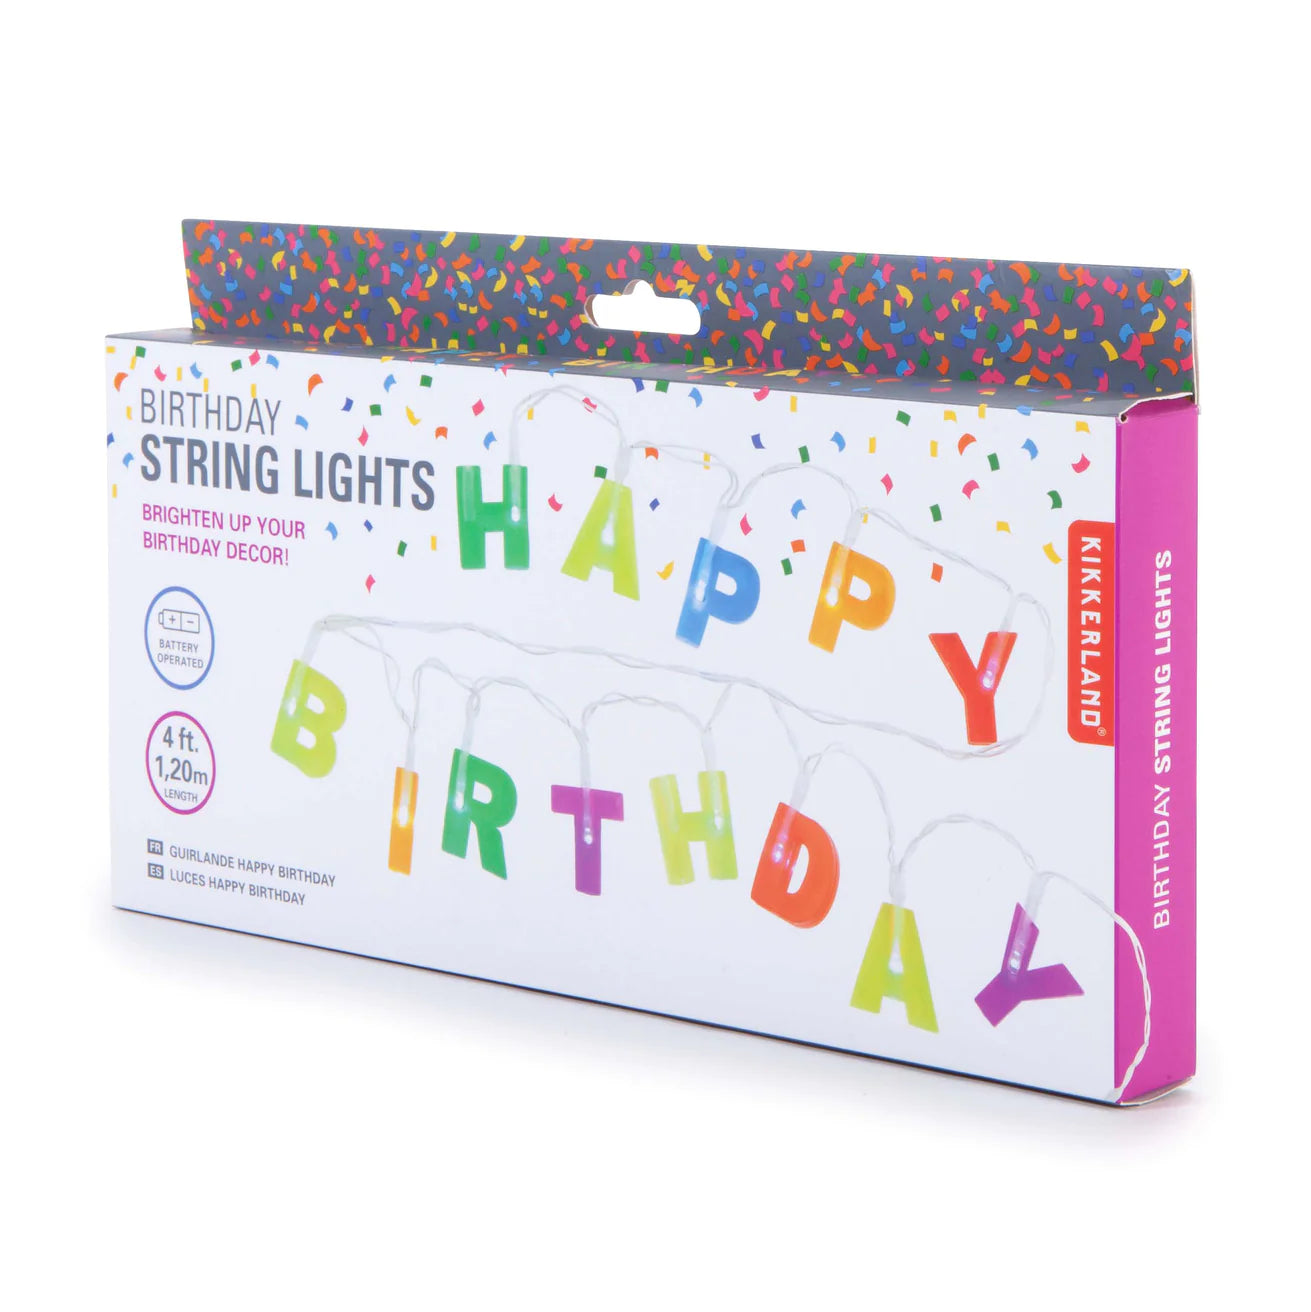 Happy Birthday String Lights